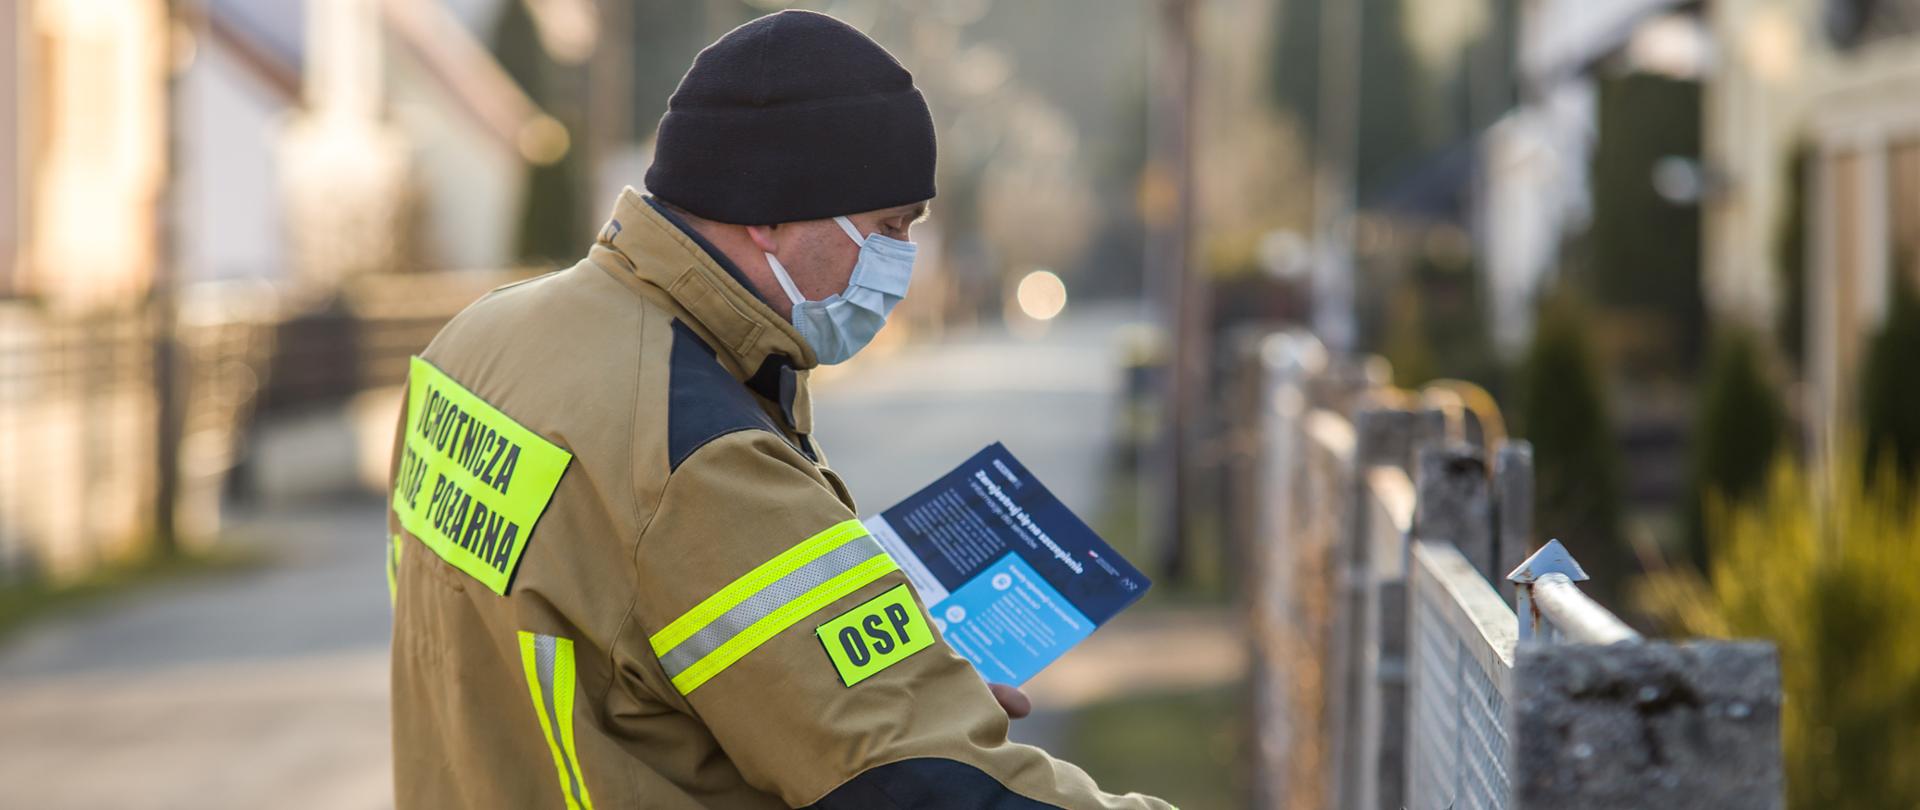 Zdjęcie przedstawia strażaka OSP wrzucającego ulotkę propagujące wiedzę na temat profilaktyki oraz szczepień przeciwko COVID-19. Strażak wrzuca ulotkę prawą ręką do skrzynki na listy. W lewej ręce trzyma pozostałe ulotki. Strażak ubrany w ubranie specjalne koloru piaskowego, czarną czapkę i jasną maseczkę na twarzy."